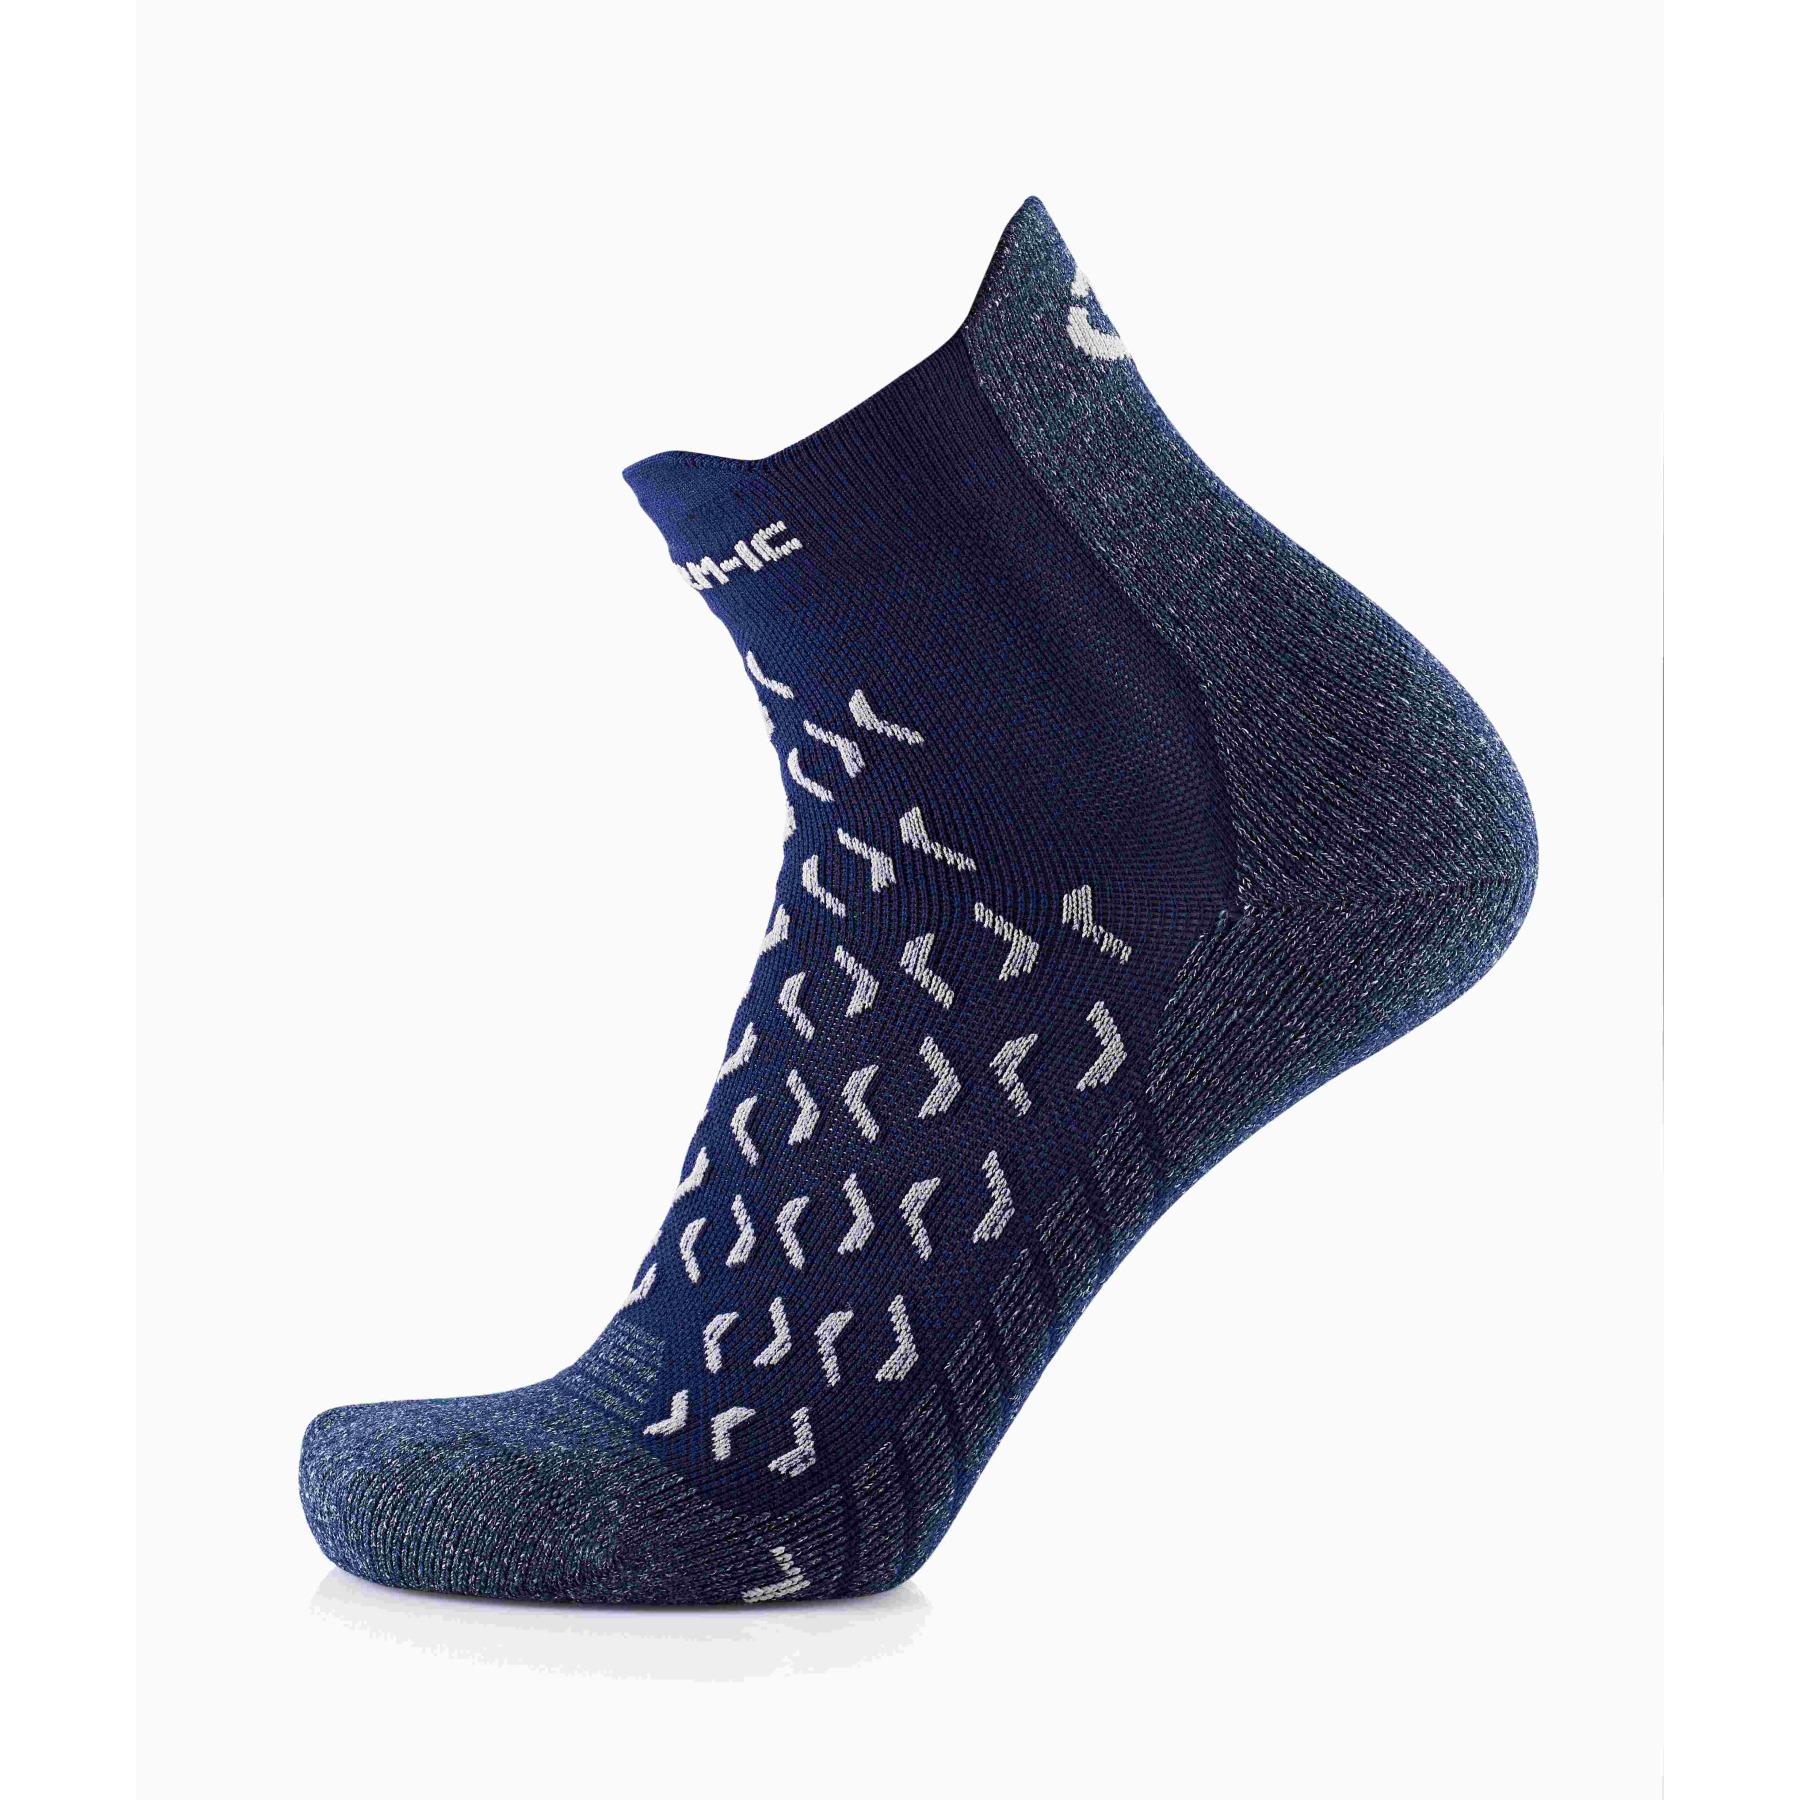 Produktbild von therm-ic Outdoor Ultra Cool Socken - blau/weiß